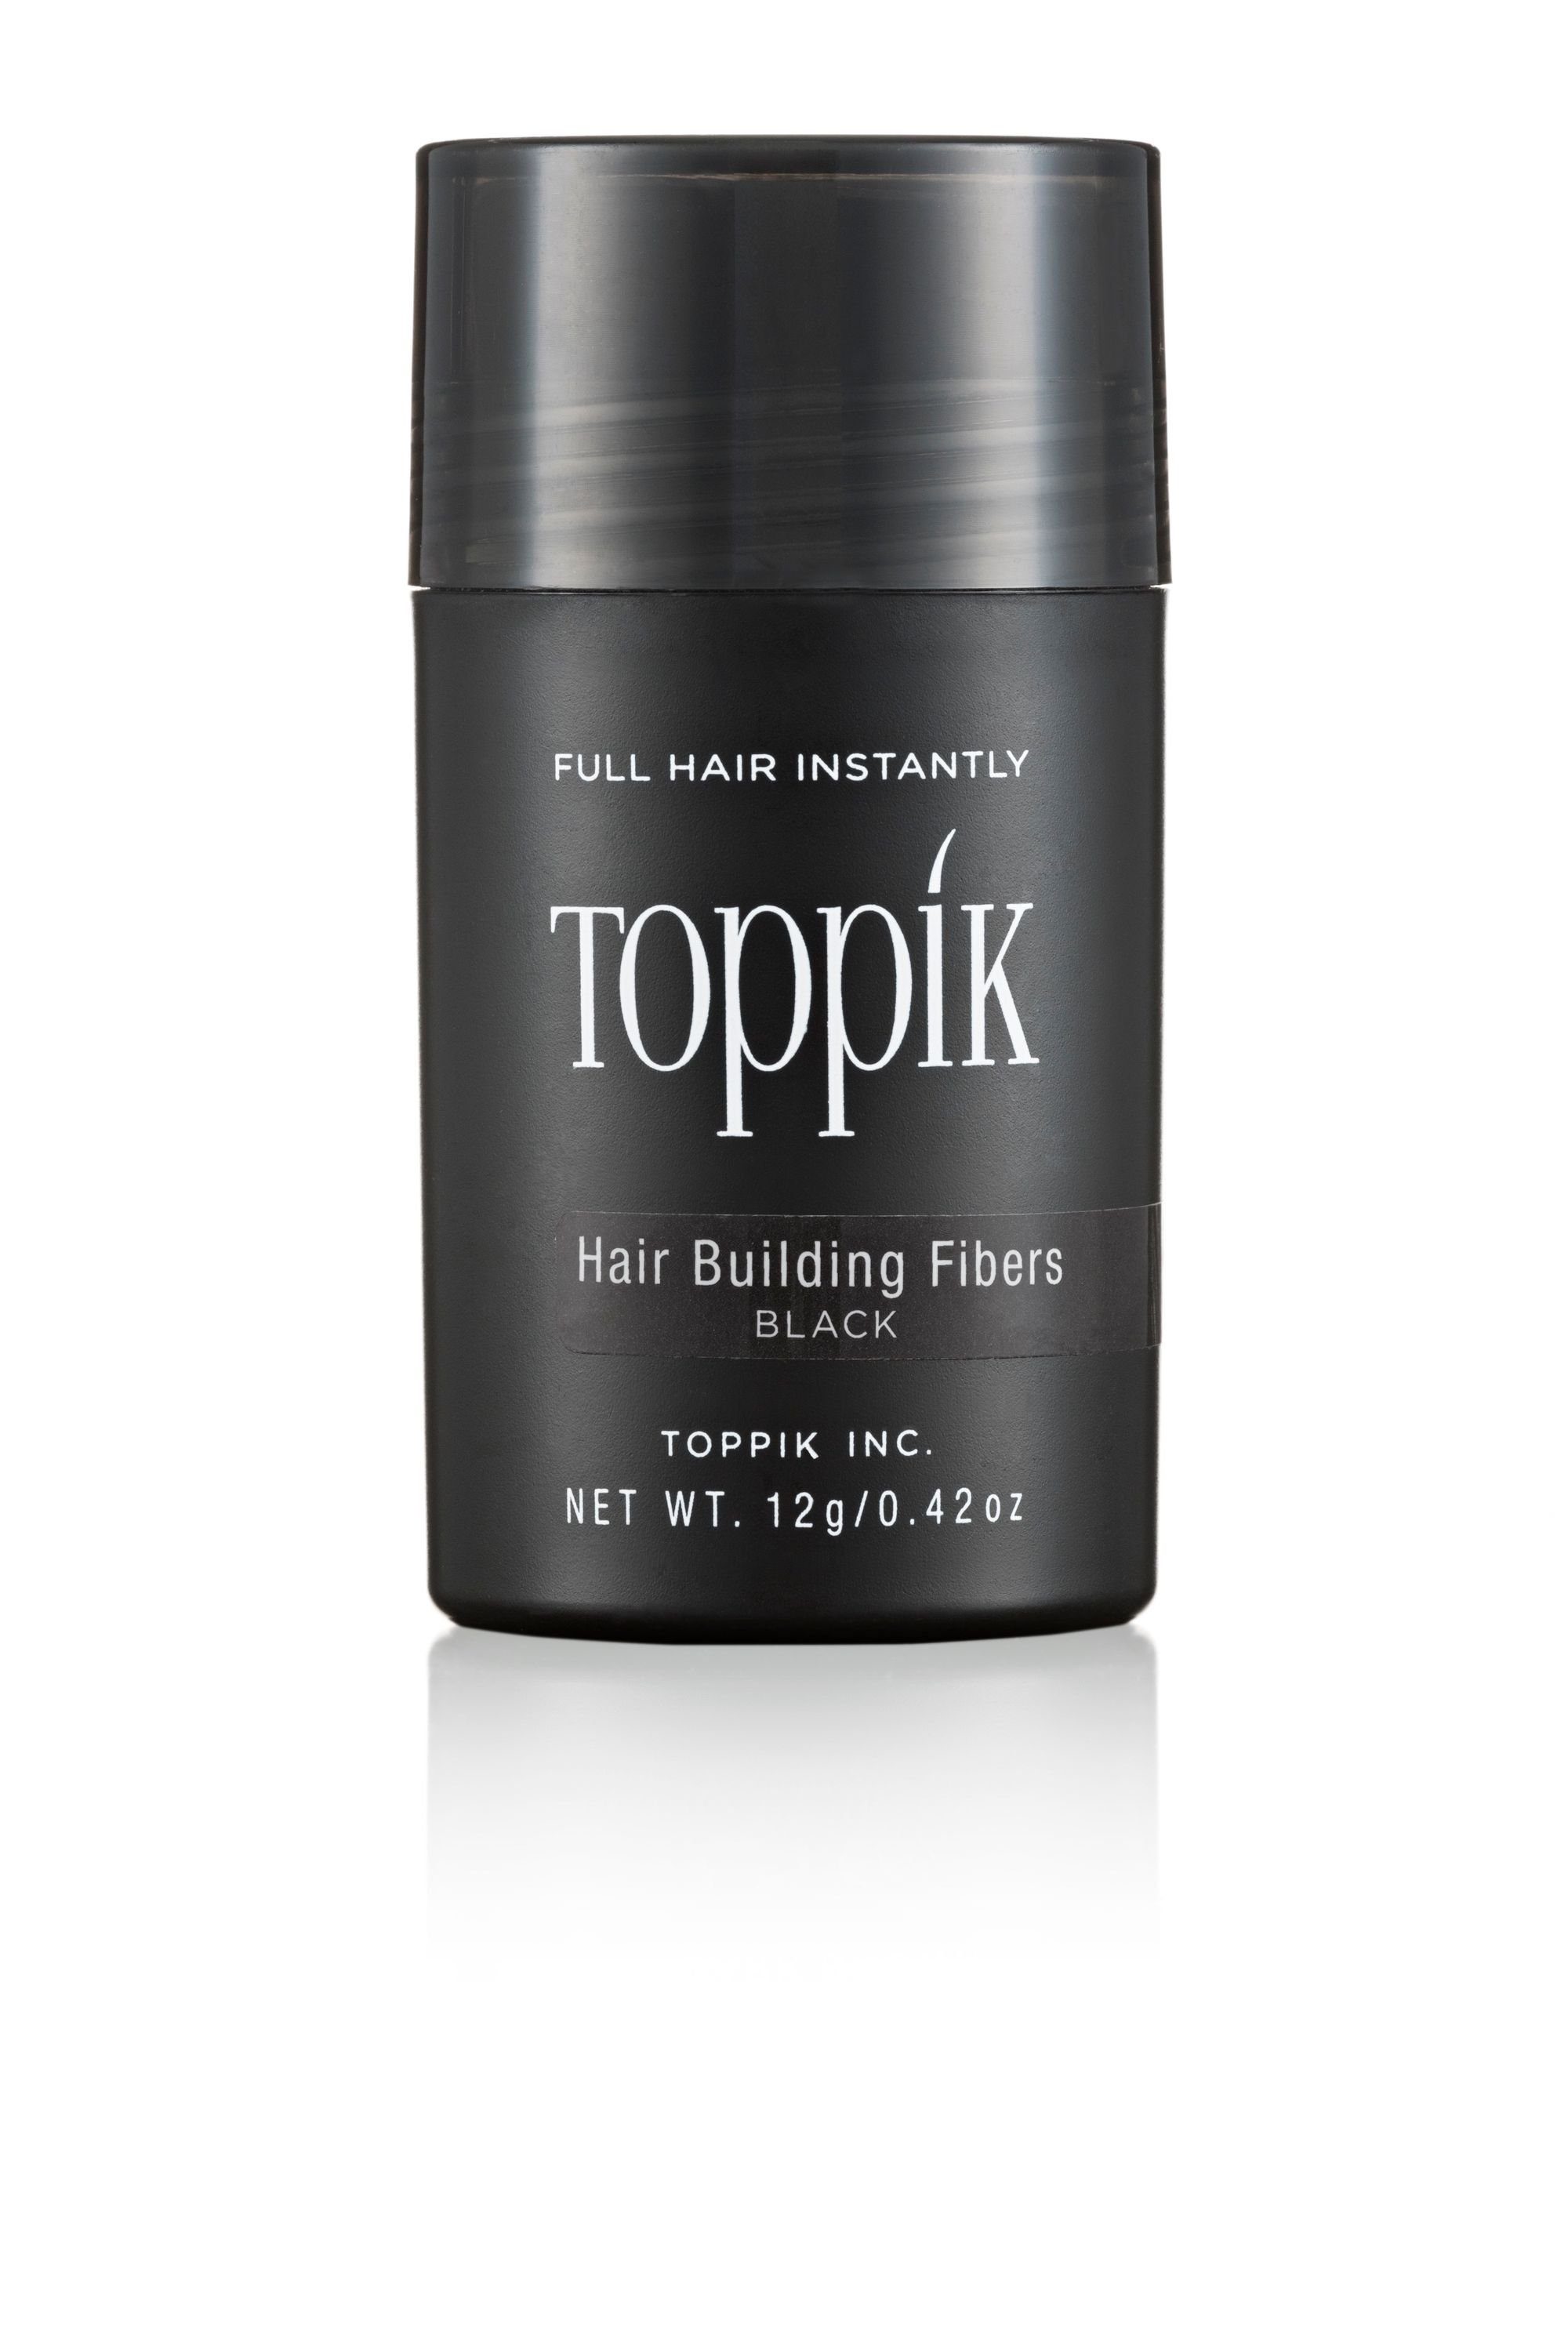 TOPPIK Haarstyling-Set Angebot: TOPPIK Hair Puder, Haarfasern, 12 Fibers Grau g